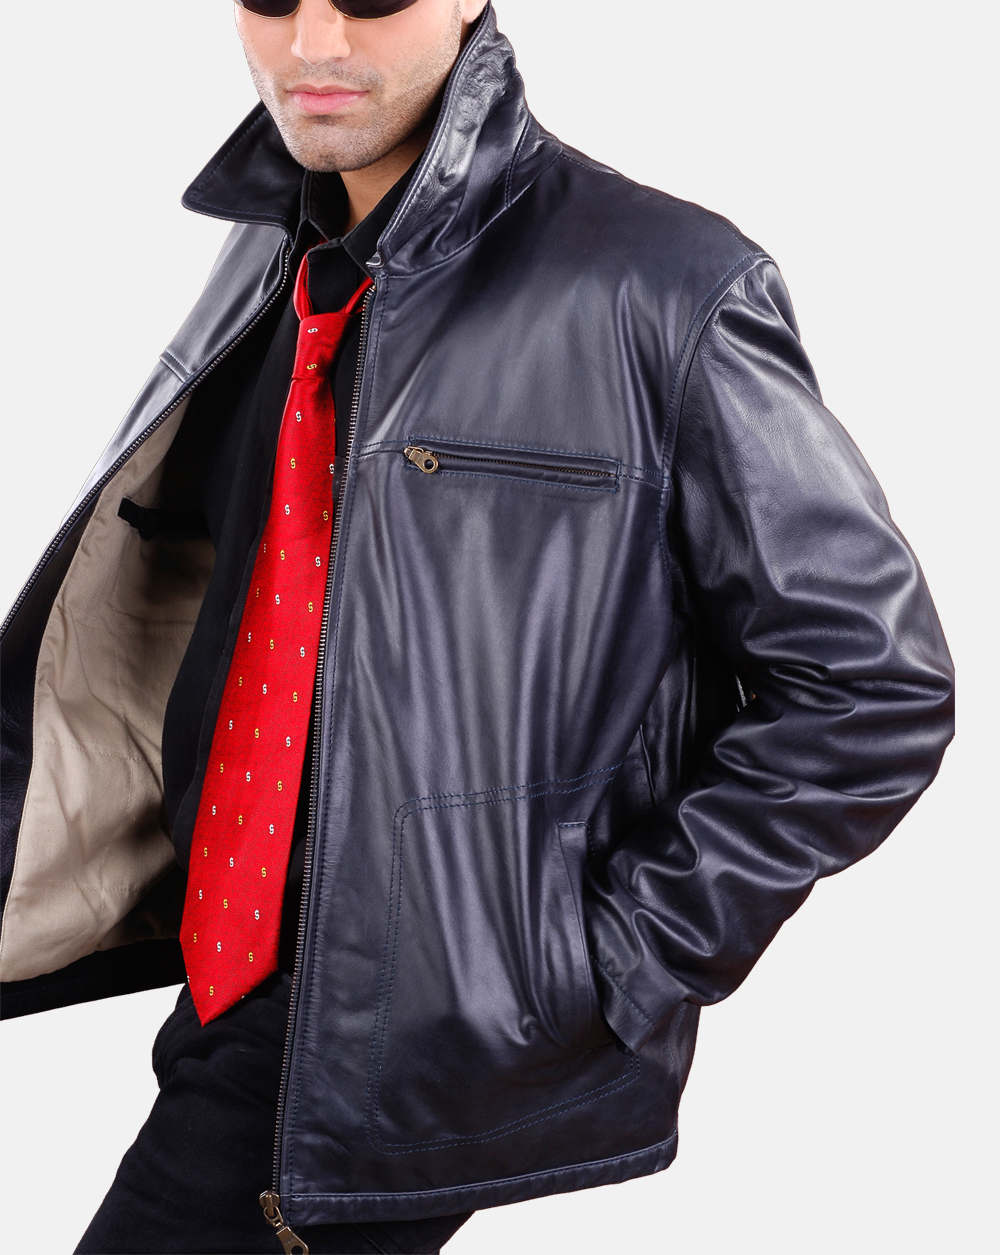 Genuine Bomber leather jacket